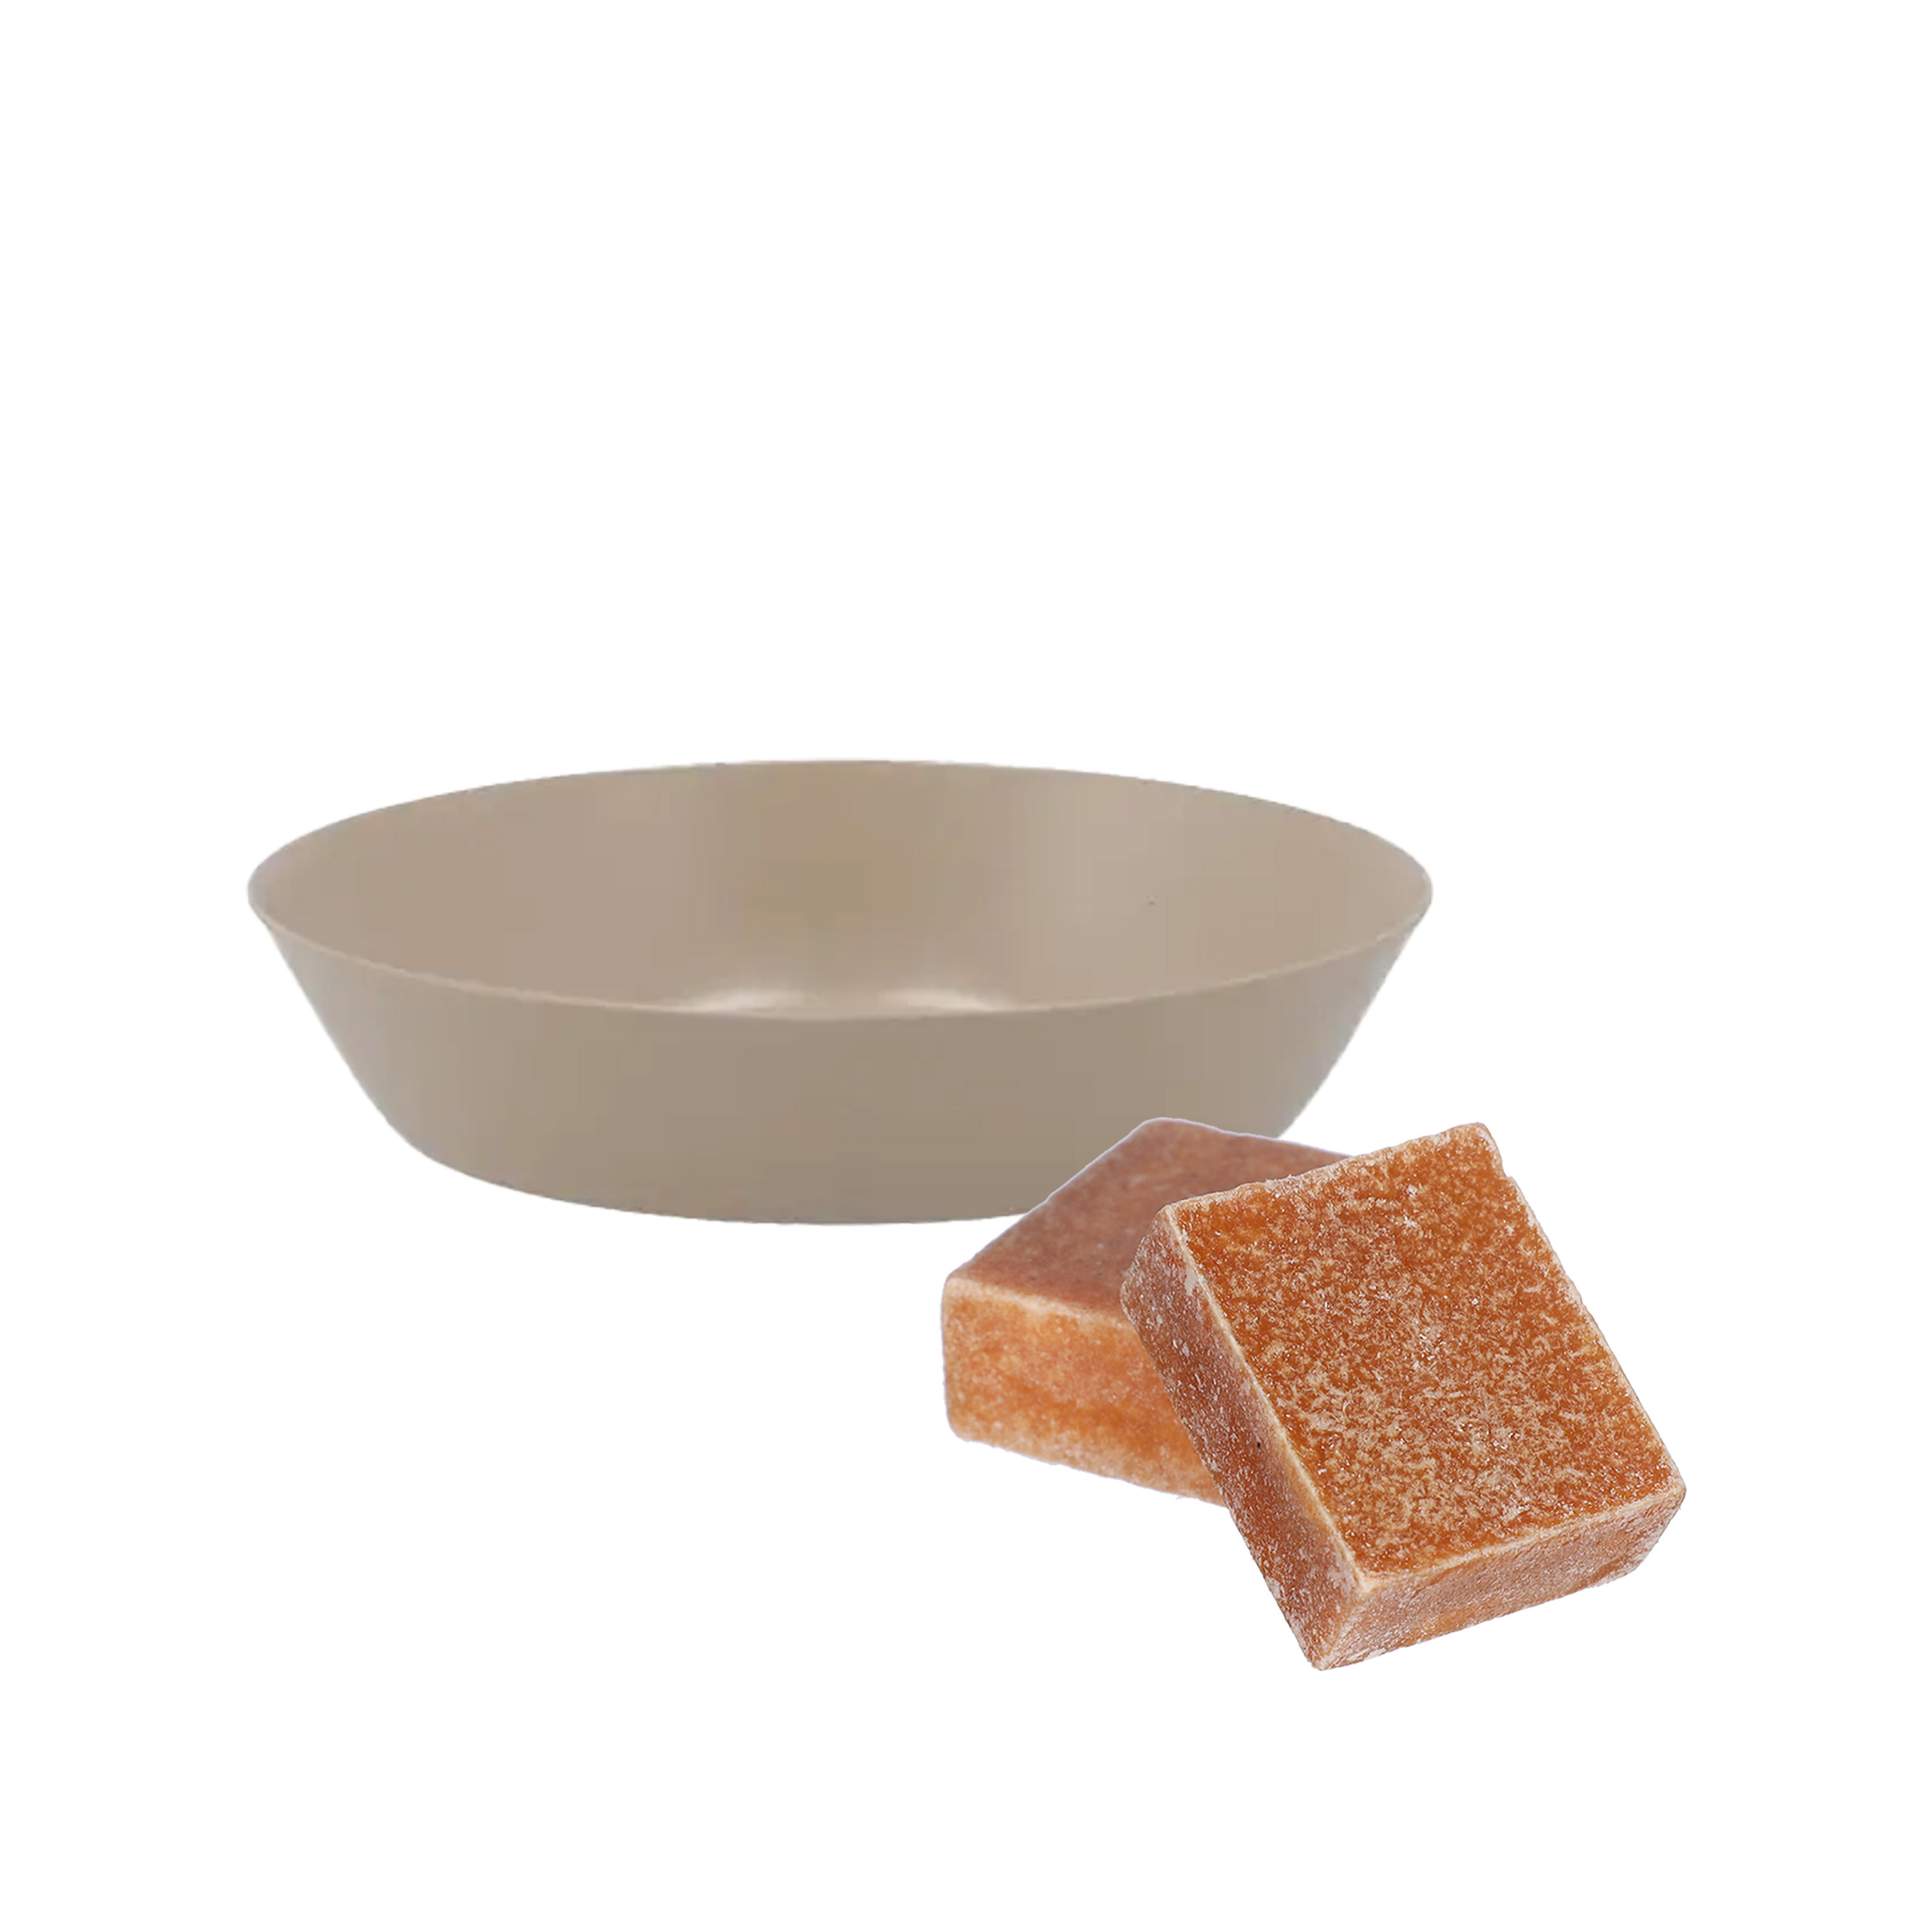 Amberblokjes-geurblokjes cadeauset amber geur inclusief schaaltje